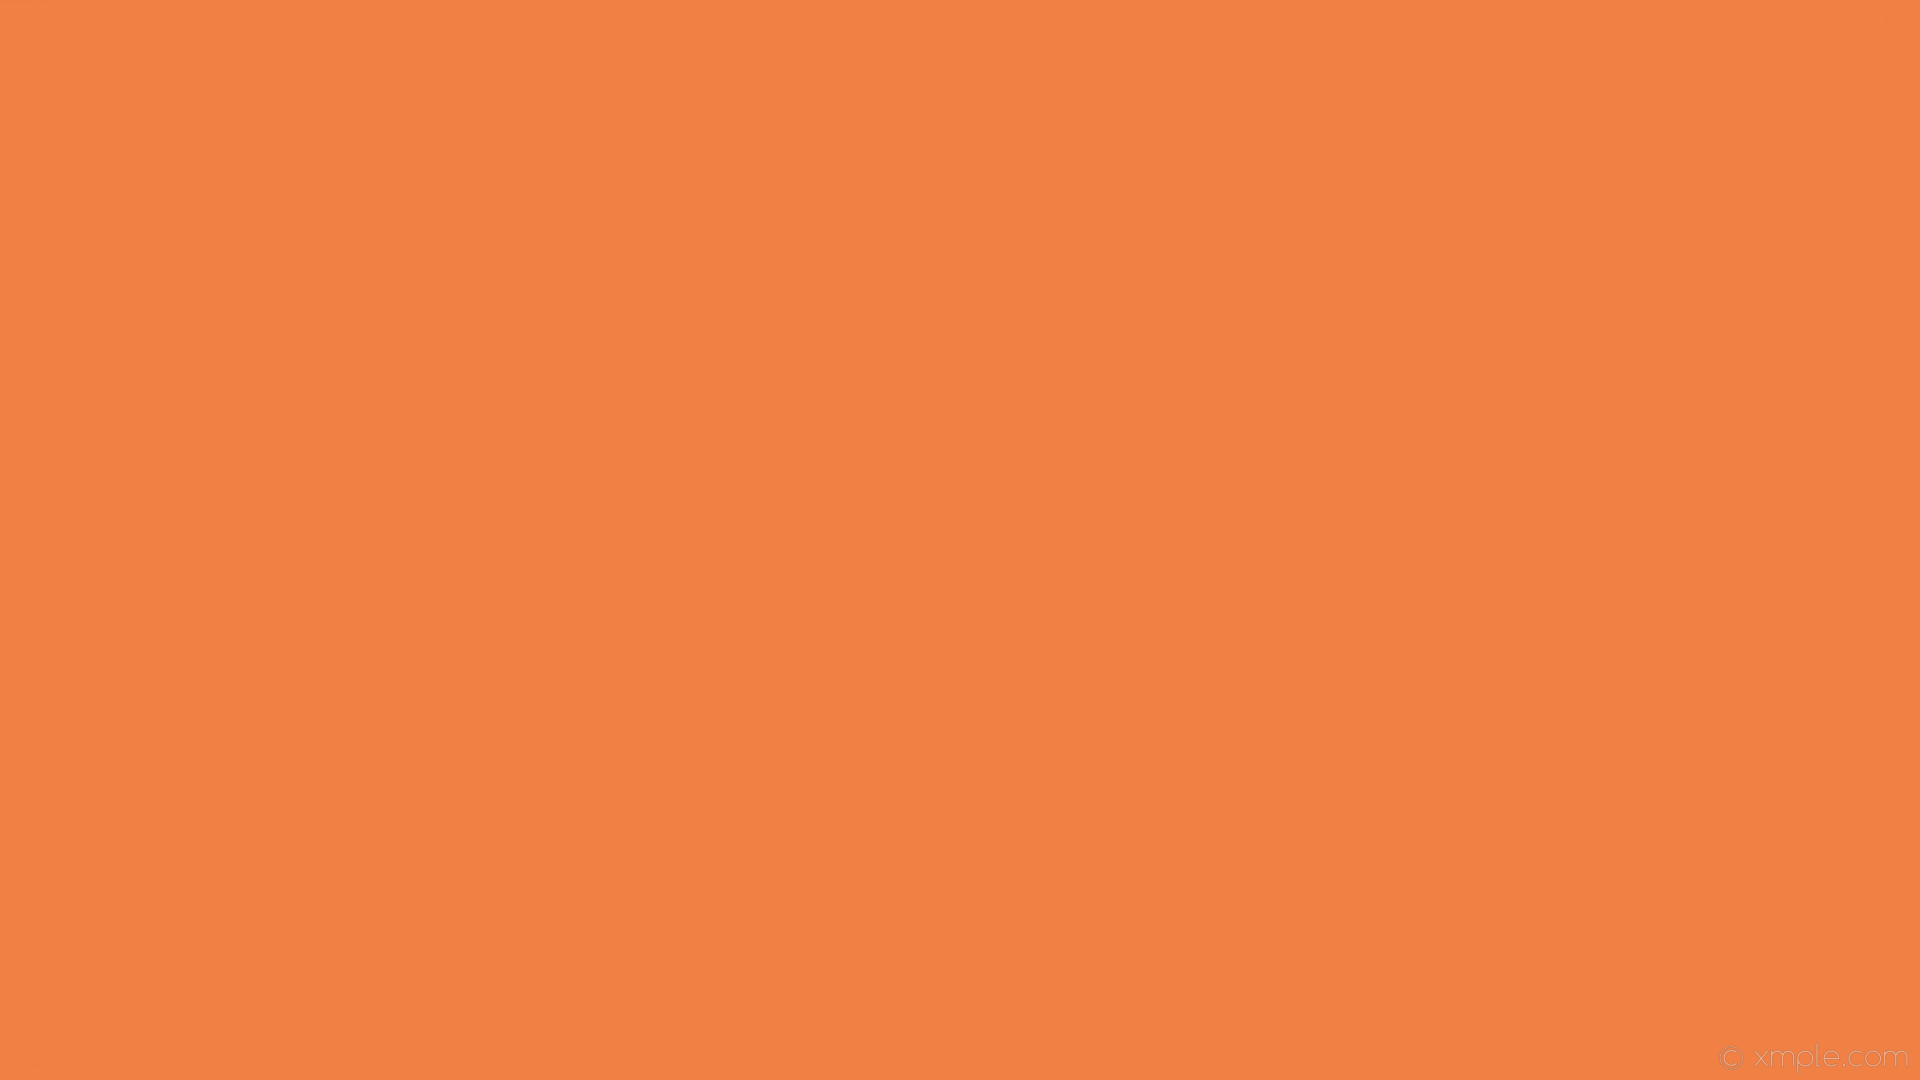 Wallpaper Orange Solid Color Plain One Colour Single - Orange One Color  Background - 1920x1080 Wallpaper 